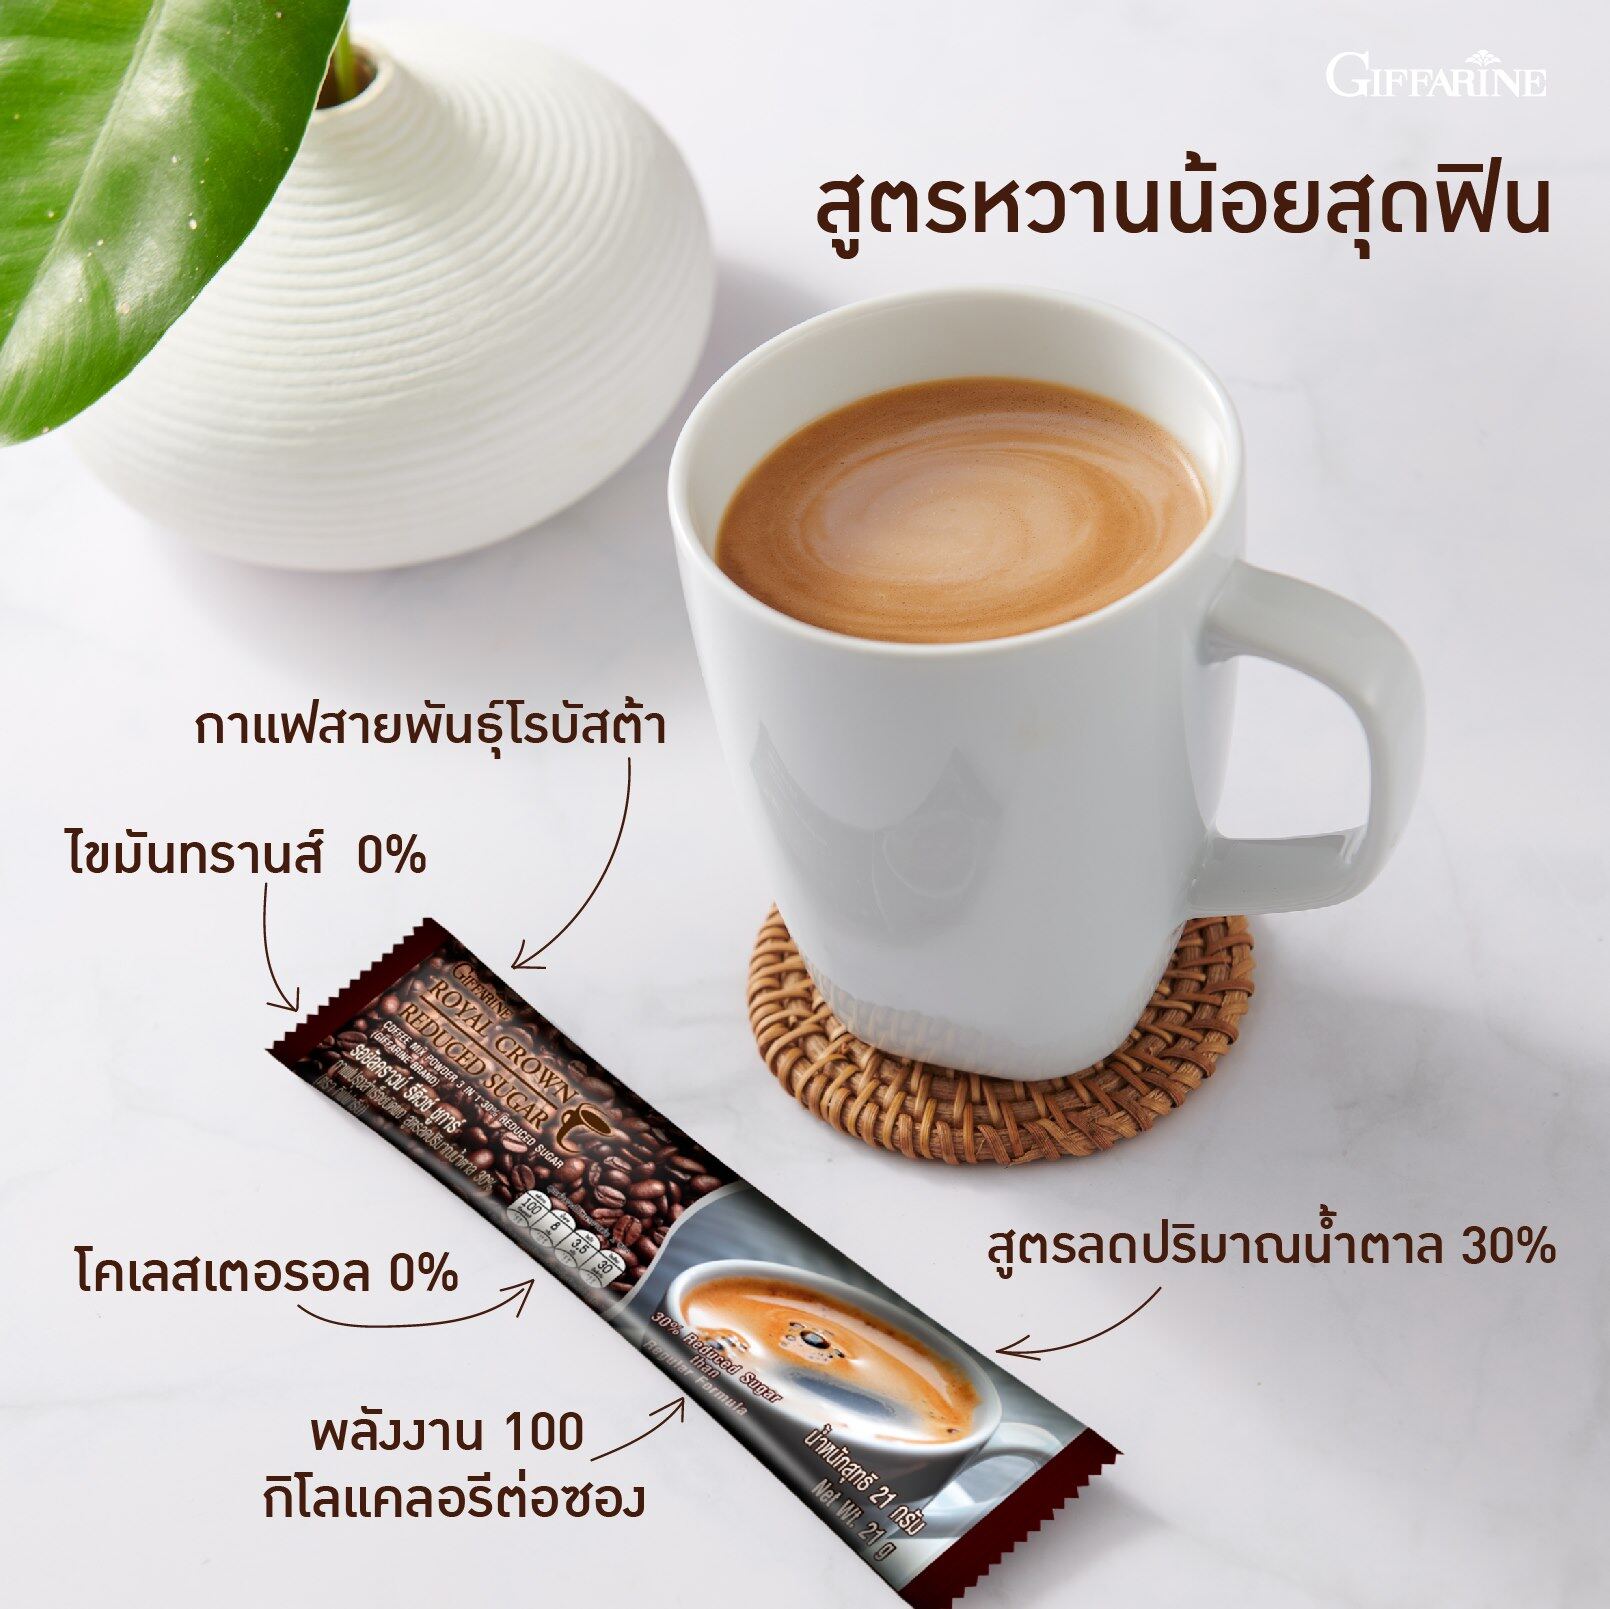 รอยัล คราวน์ รีดิวซ์ ชูการ์ กาแฟปรุงสำเร็จ ชนิดผง สูตรลดปริมาณน้ำตาล 30% กาแฟ 3 in 1 บรรจุ 30 ซอง กาแฟโรบัสต้า